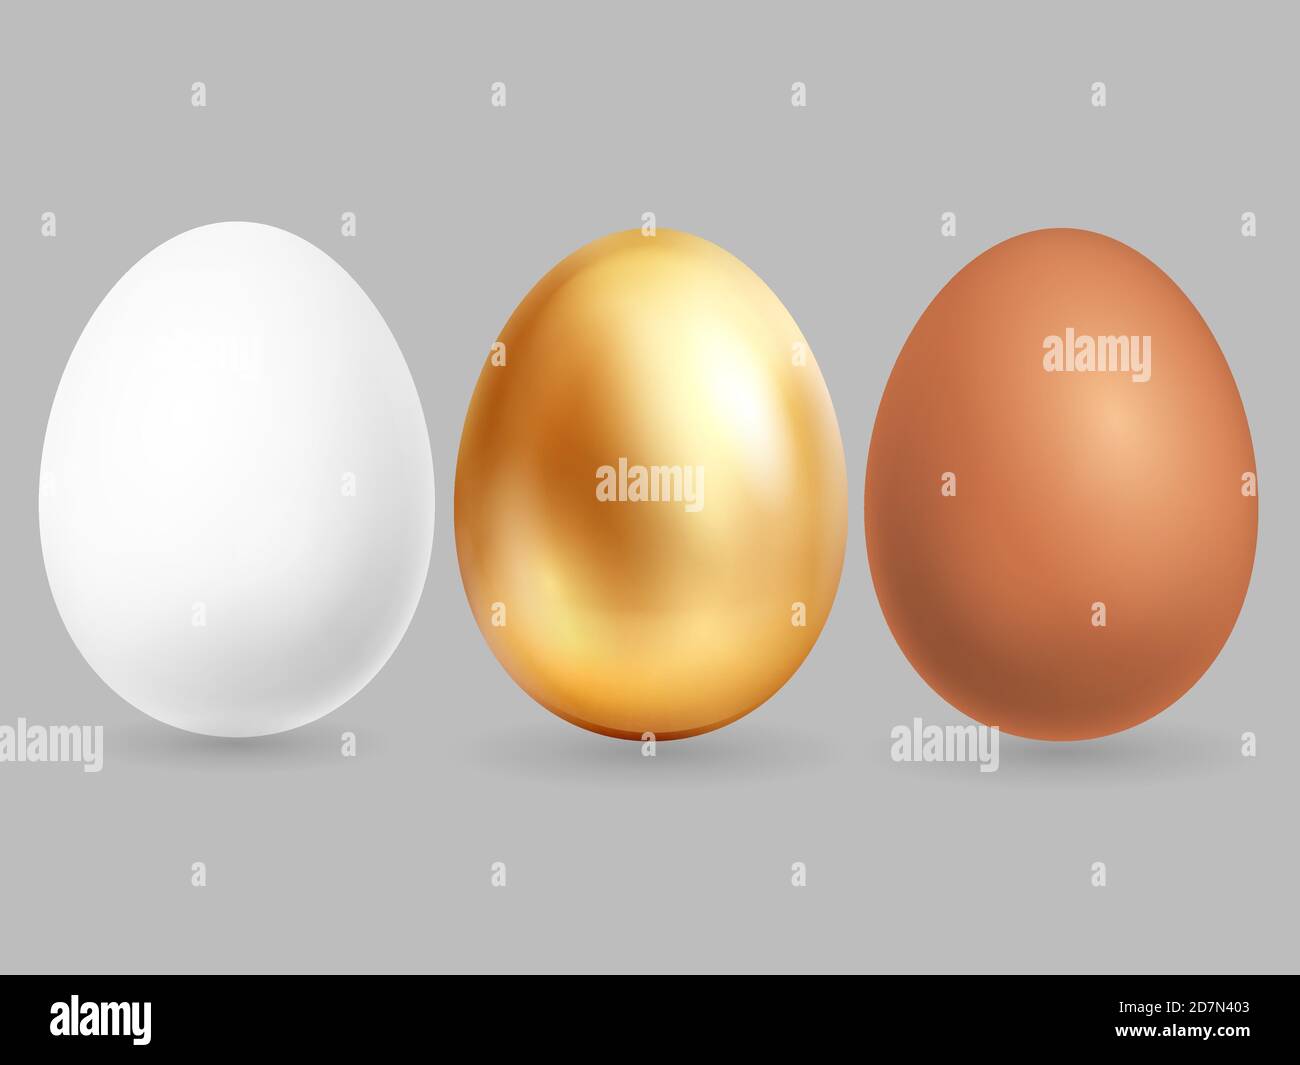 Trois œufs réalistes isolés sur fond gris. Illustration des œufs vectoriels de poulet doré, brun et blanc Illustration de Vecteur